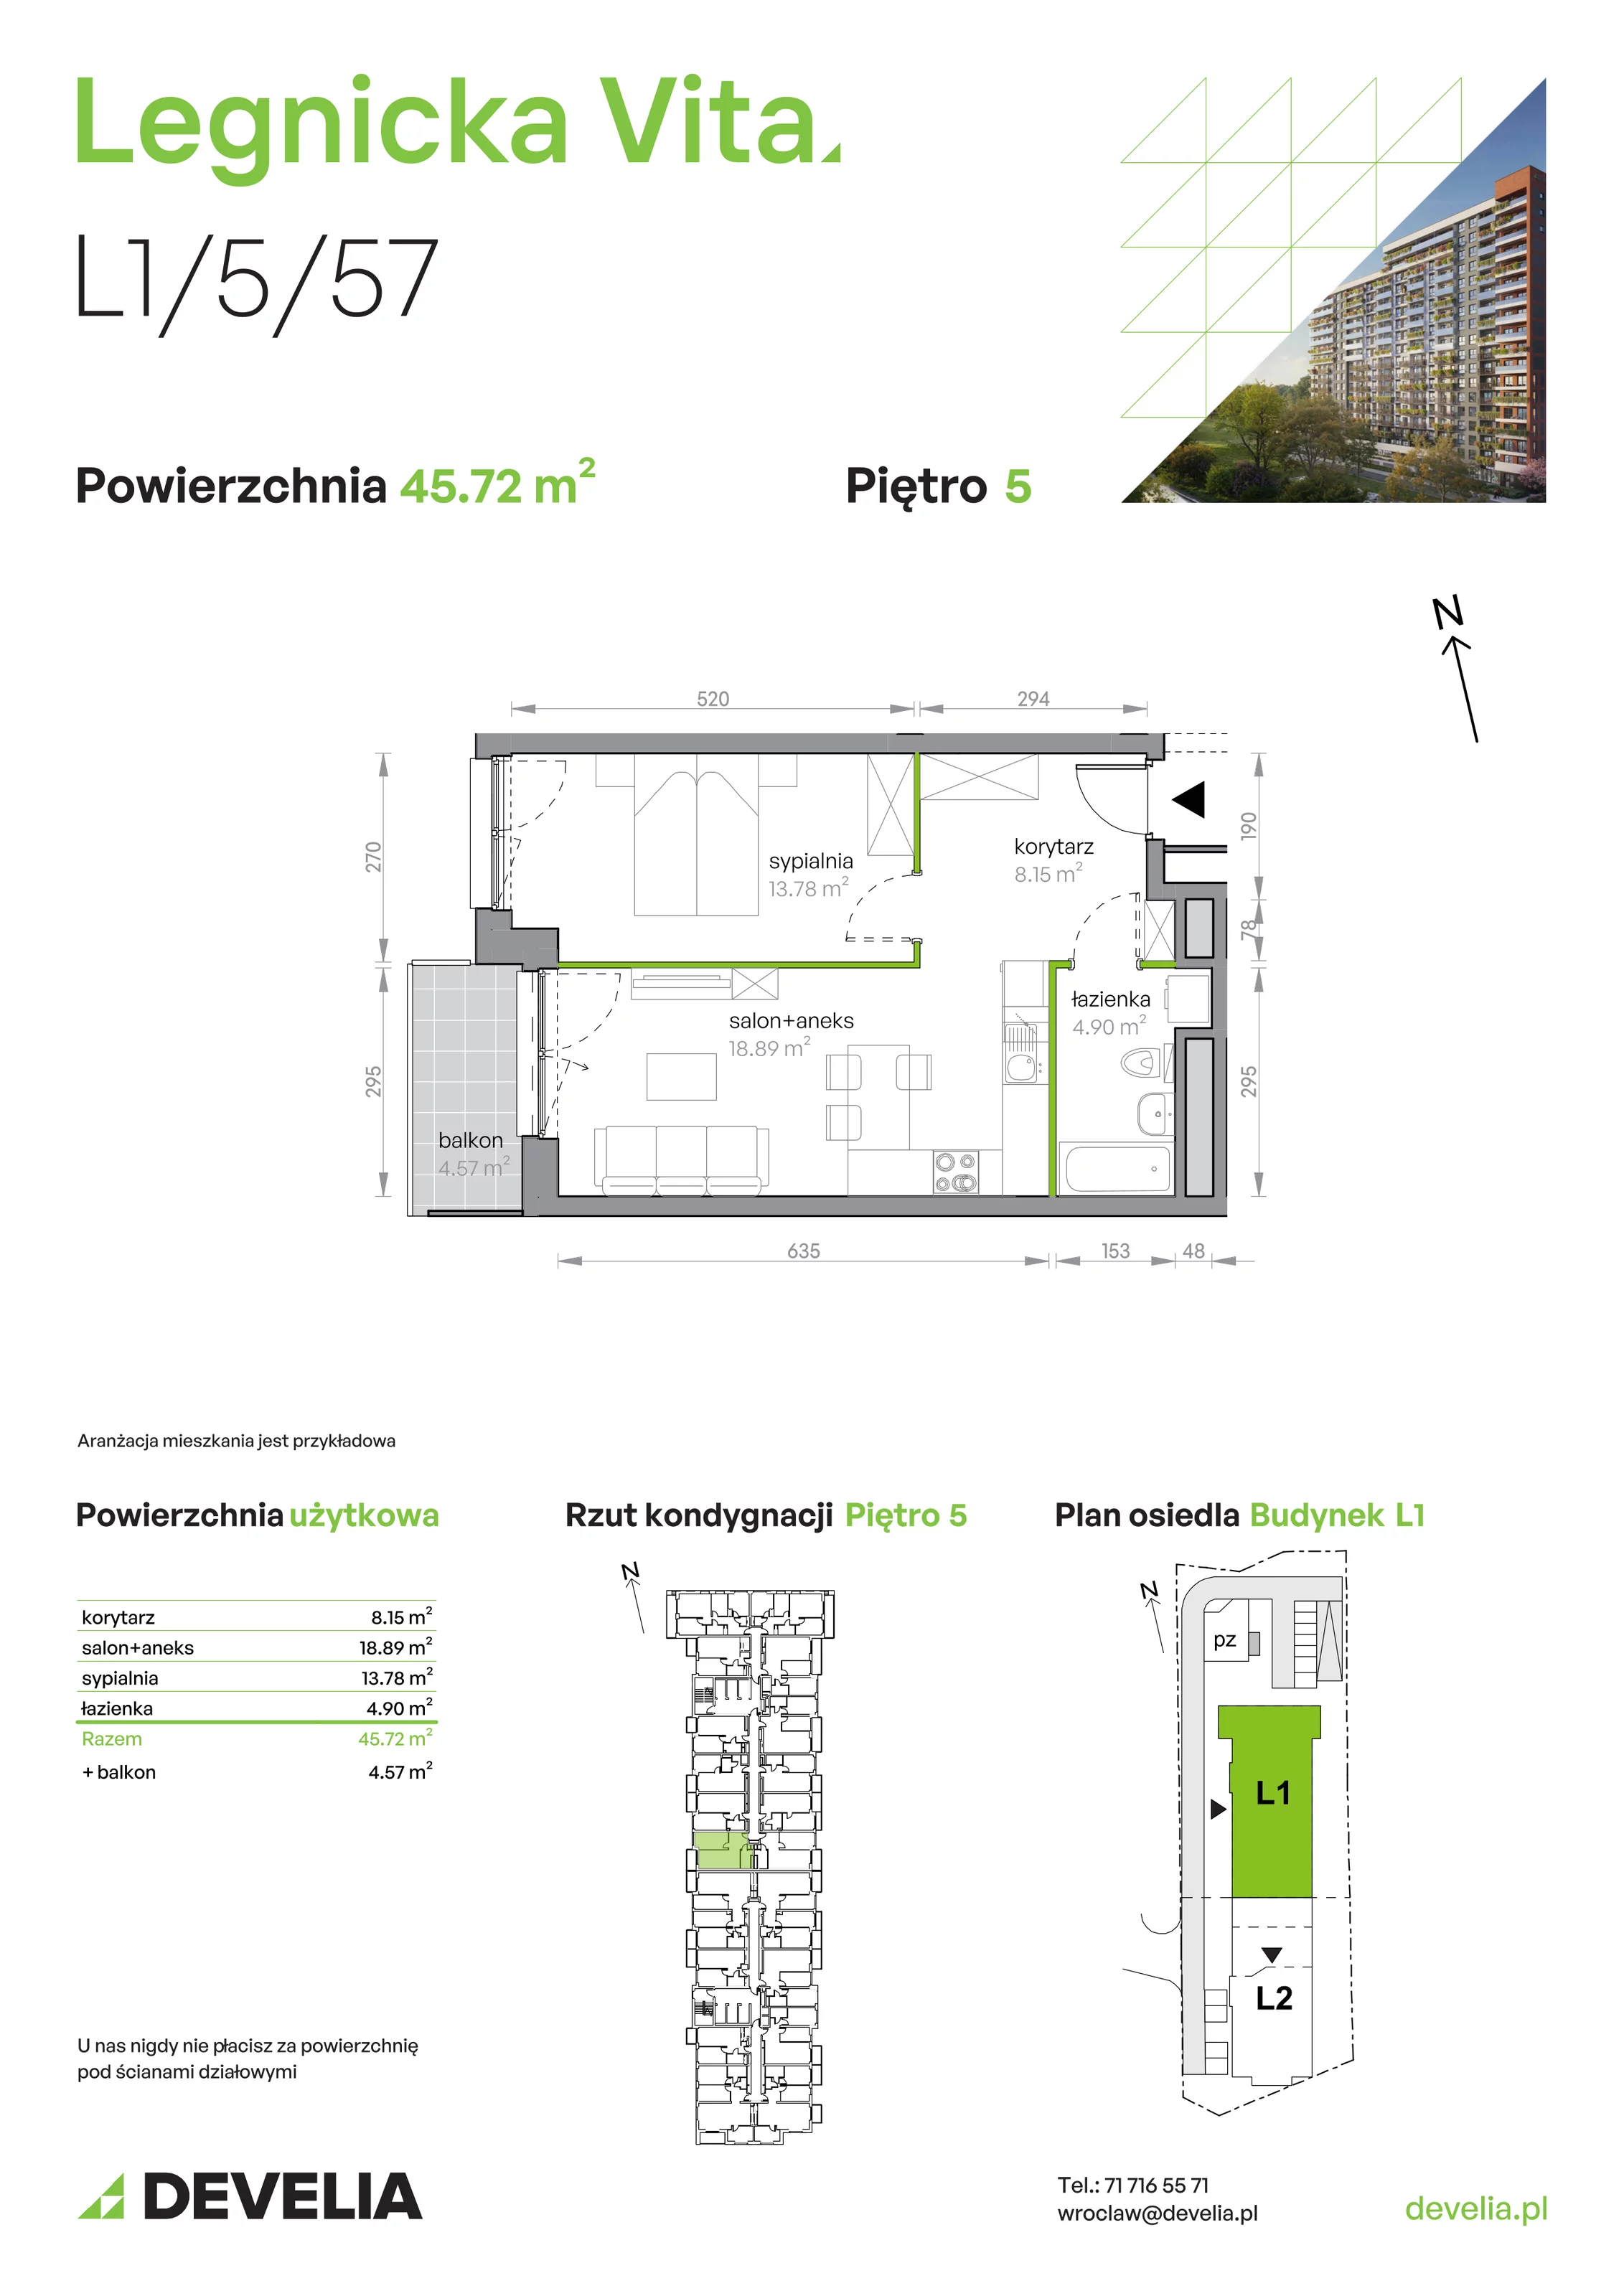 Mieszkanie 45,72 m², piętro 5, oferta nr L1/5/57, Legnicka Vita, Wrocław, Gądów-Popowice Południowe, Popowice, ul. Legnicka 52 A